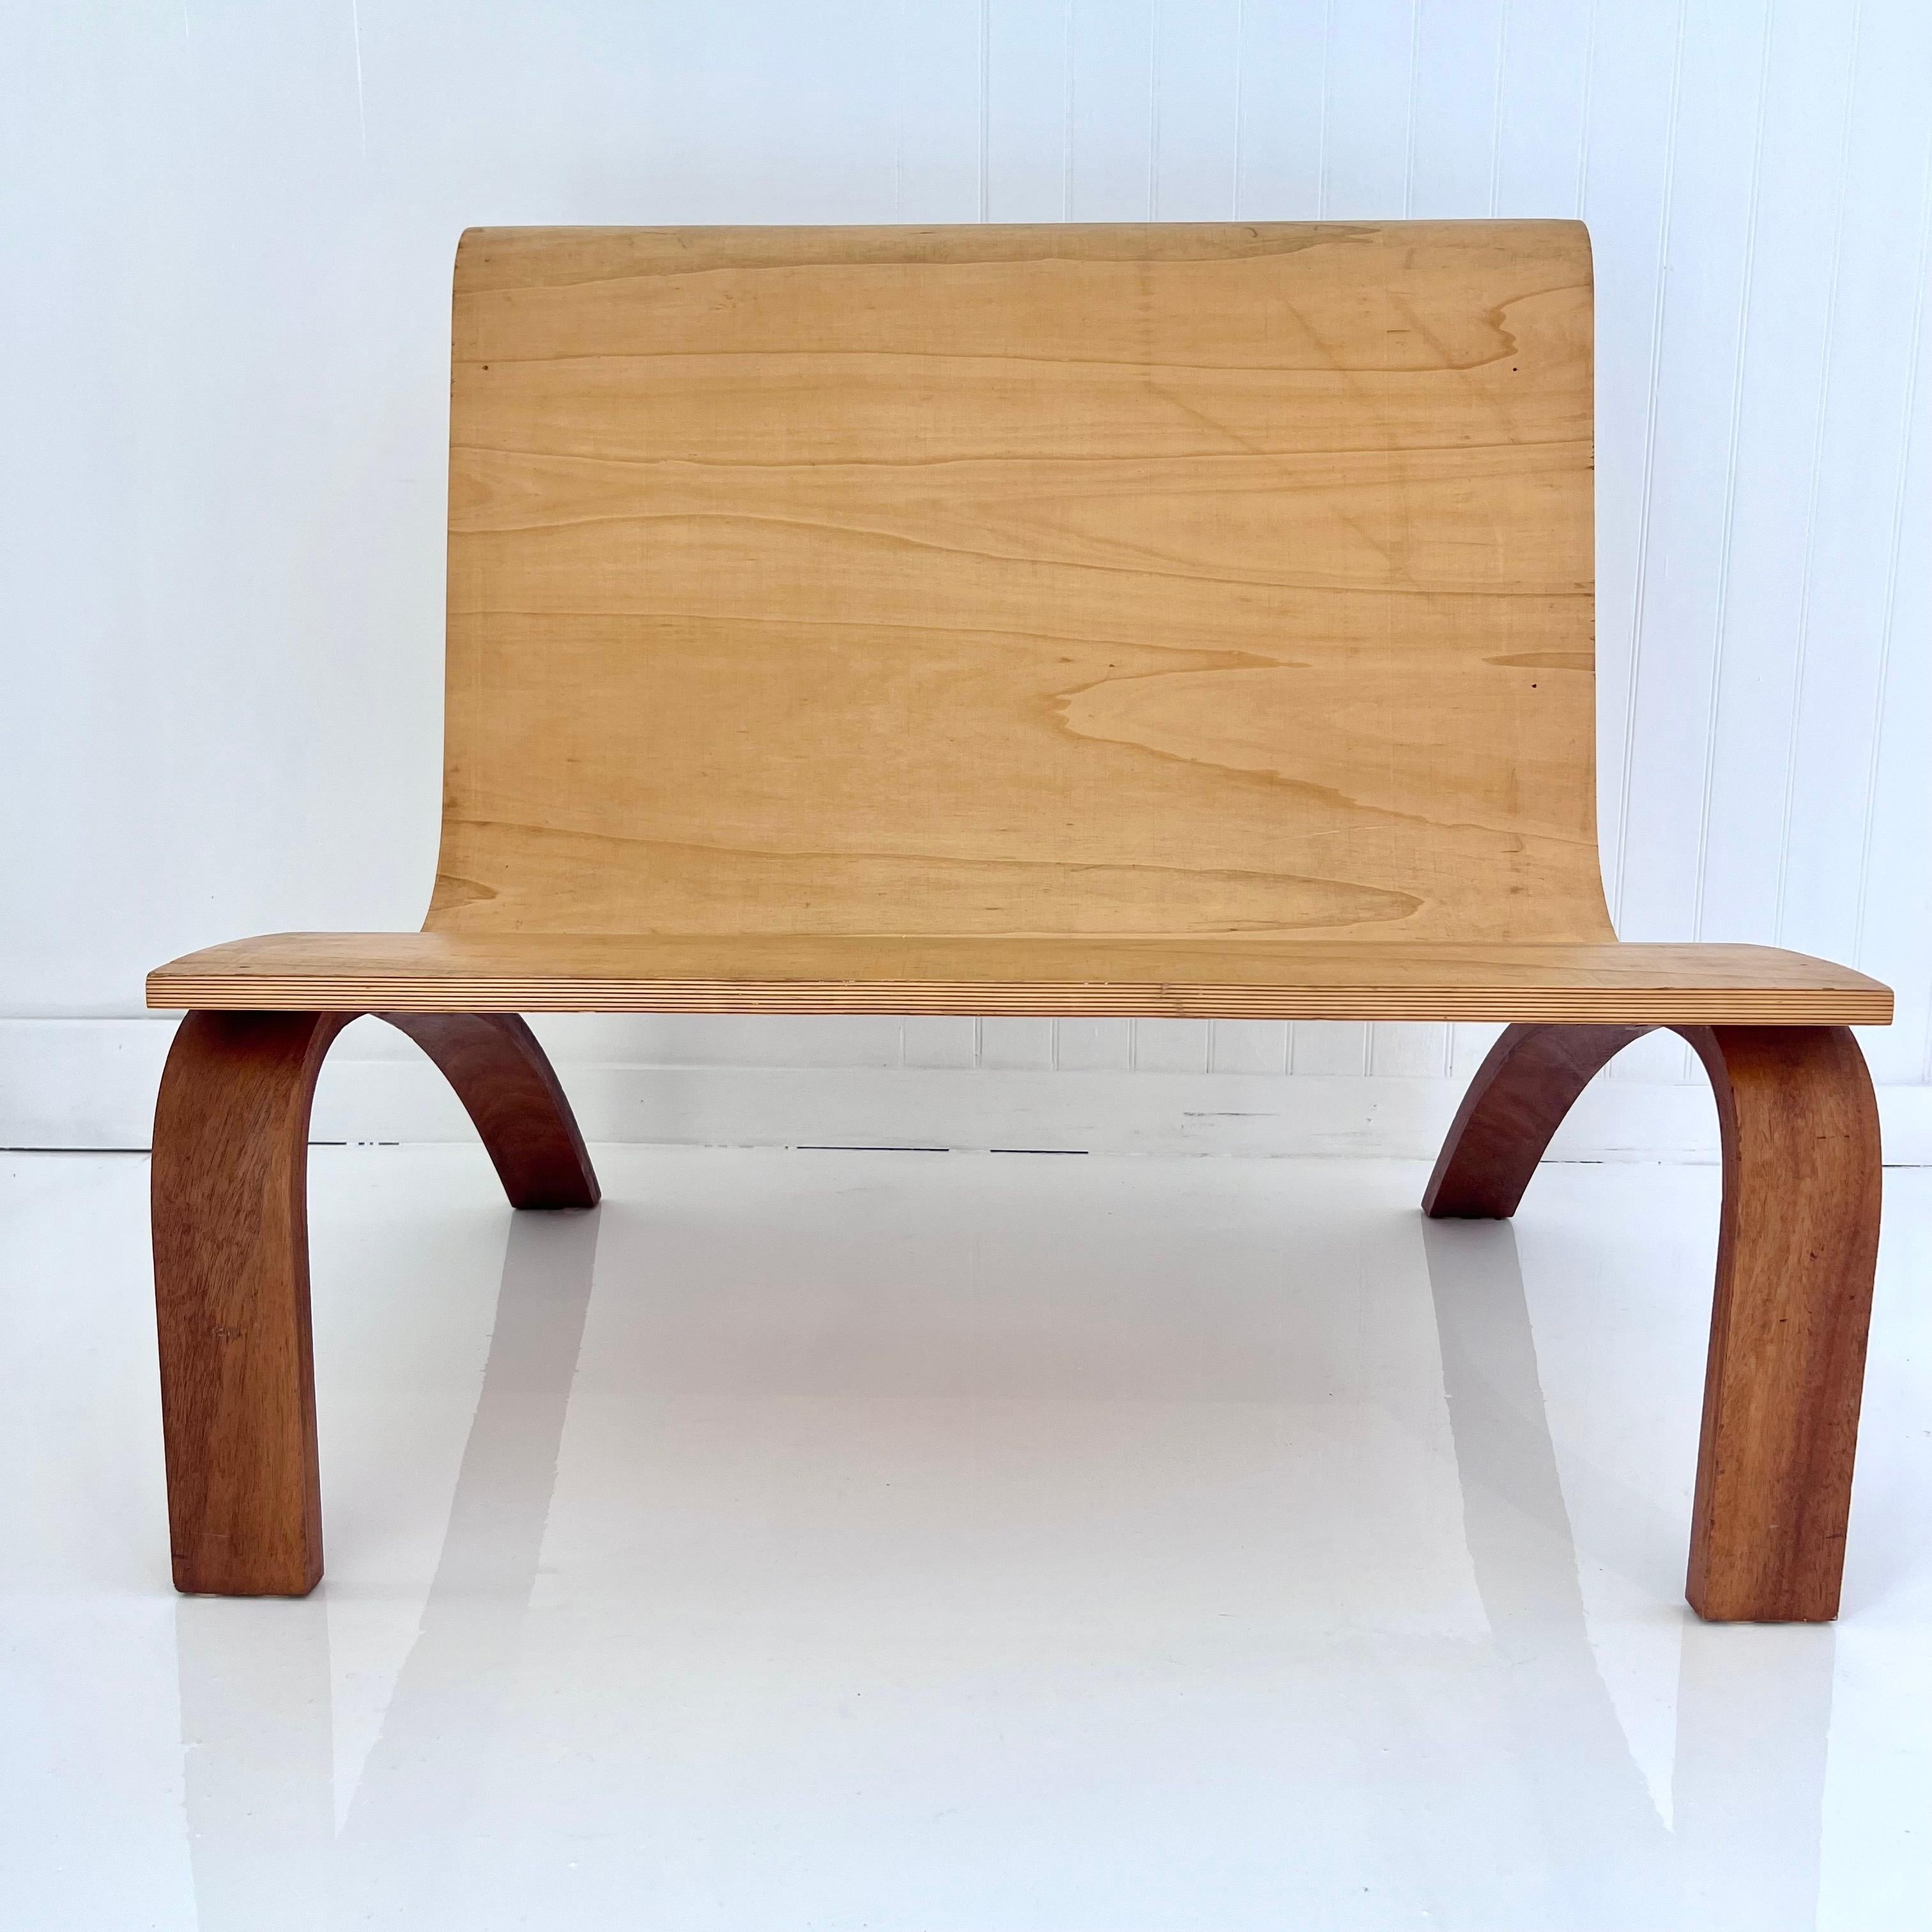 Minimalistische Bugholzbank mit Rückenlehne und Sitzfläche aus Sperrholz und kontrastierenden Beinen aus dunklem Holz. Die schöne Wölbung bietet einen bequemen Sitz für einen oder zwei Erwachsene. Diese Bank zeichnet sich durch eine atemberaubende